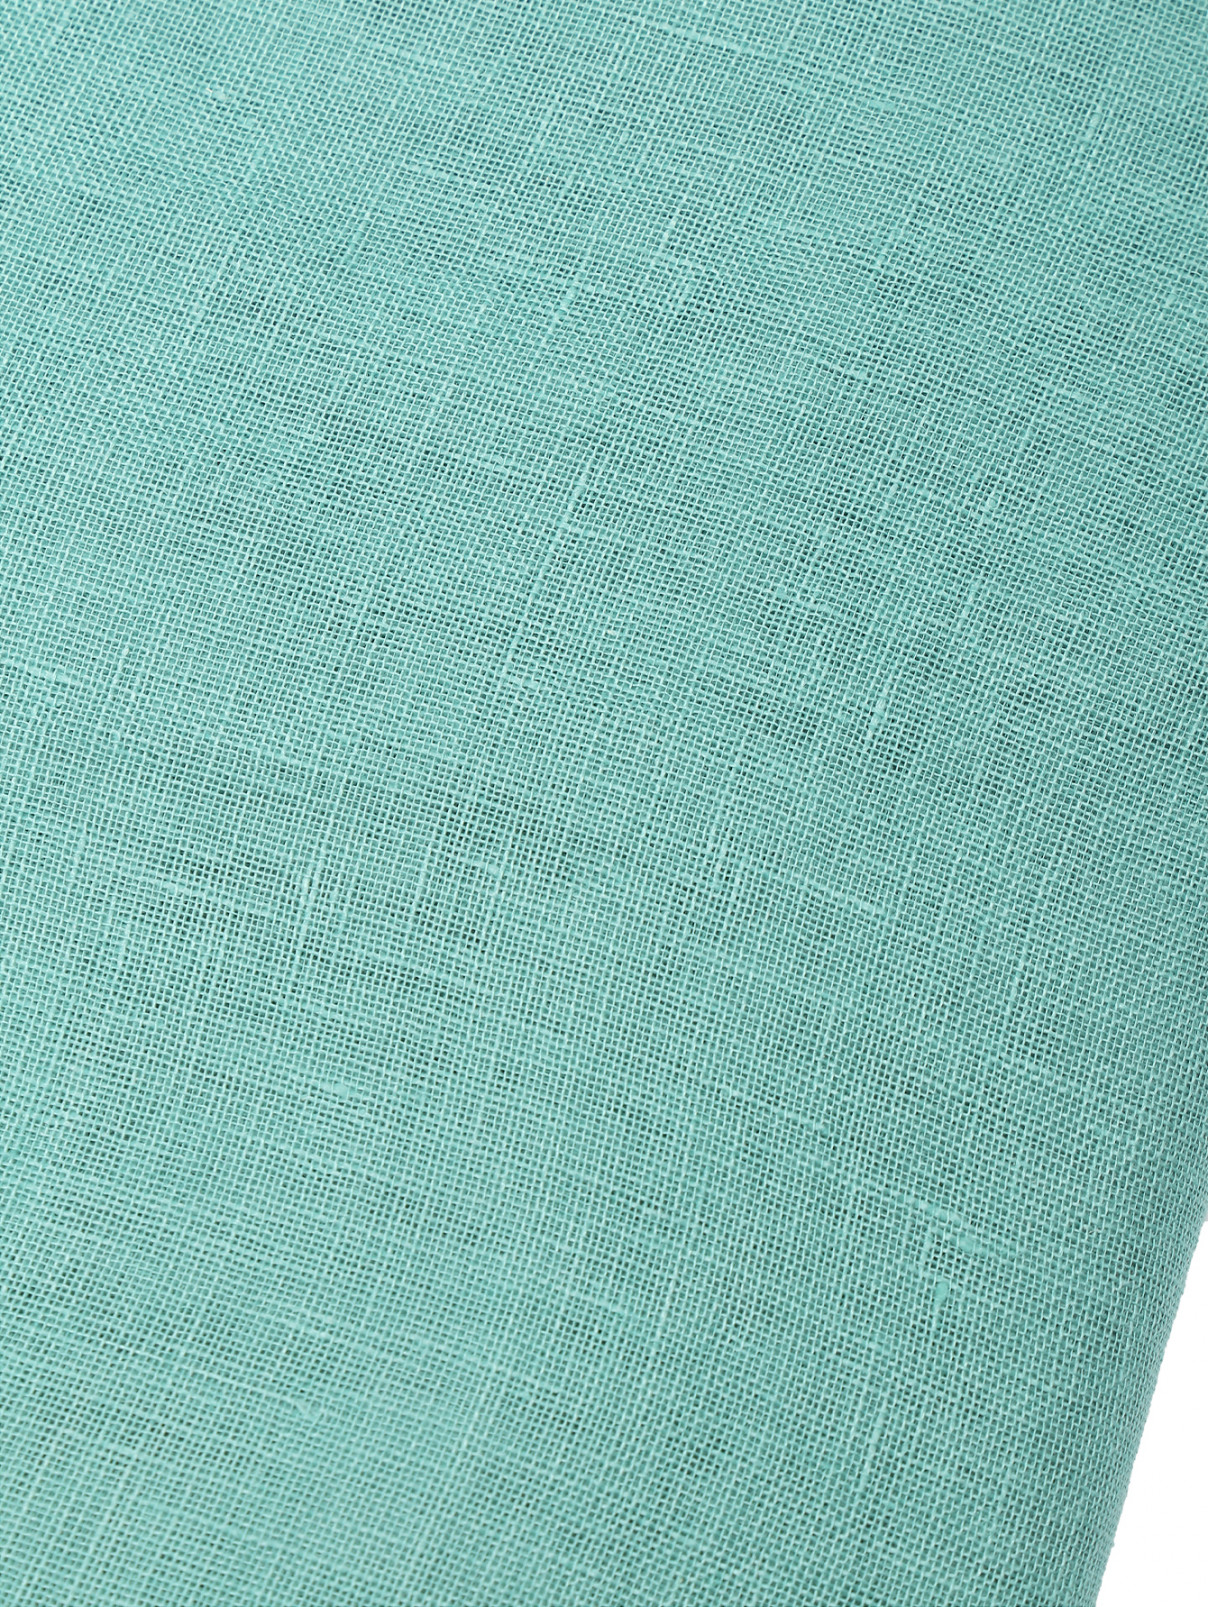 Палантин из льна с бахромой Weekend Max Mara  –  Деталь  – Цвет:  Зеленый